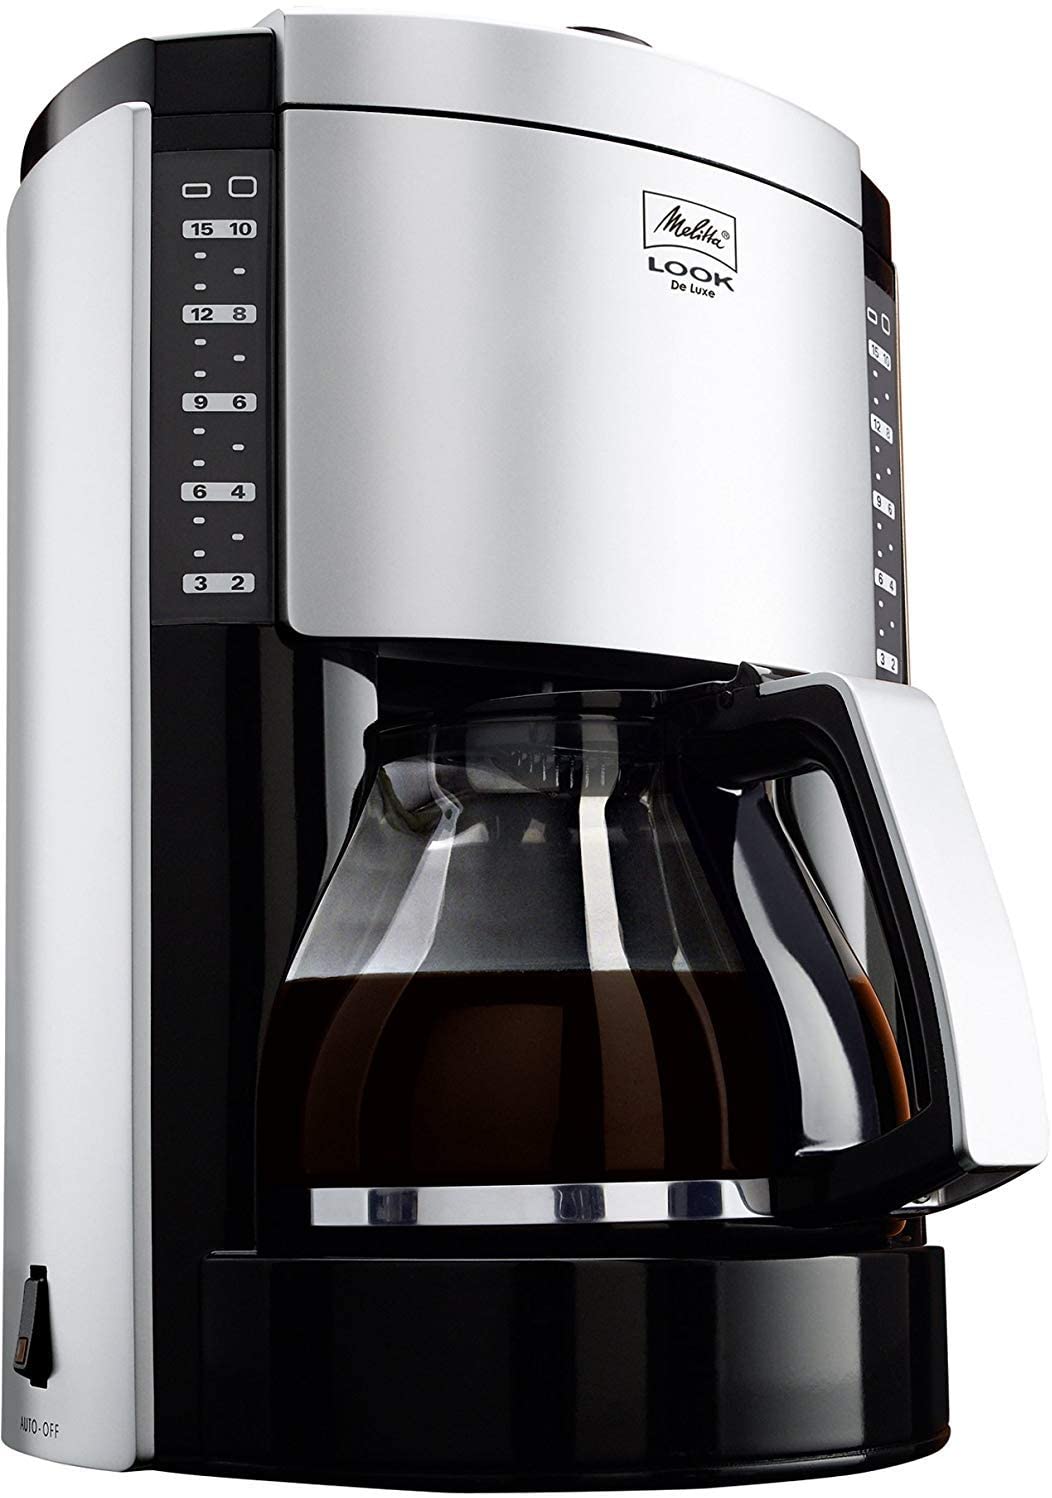 37610円 でおすすめアイテム。 ZOUSHUAIDEDIAN K-カップポッド グラウンドコーヒーの熱ドリップインスタントコーヒーマシーン ブリュー強度制御のための全自動コーヒーマシンのホーム用